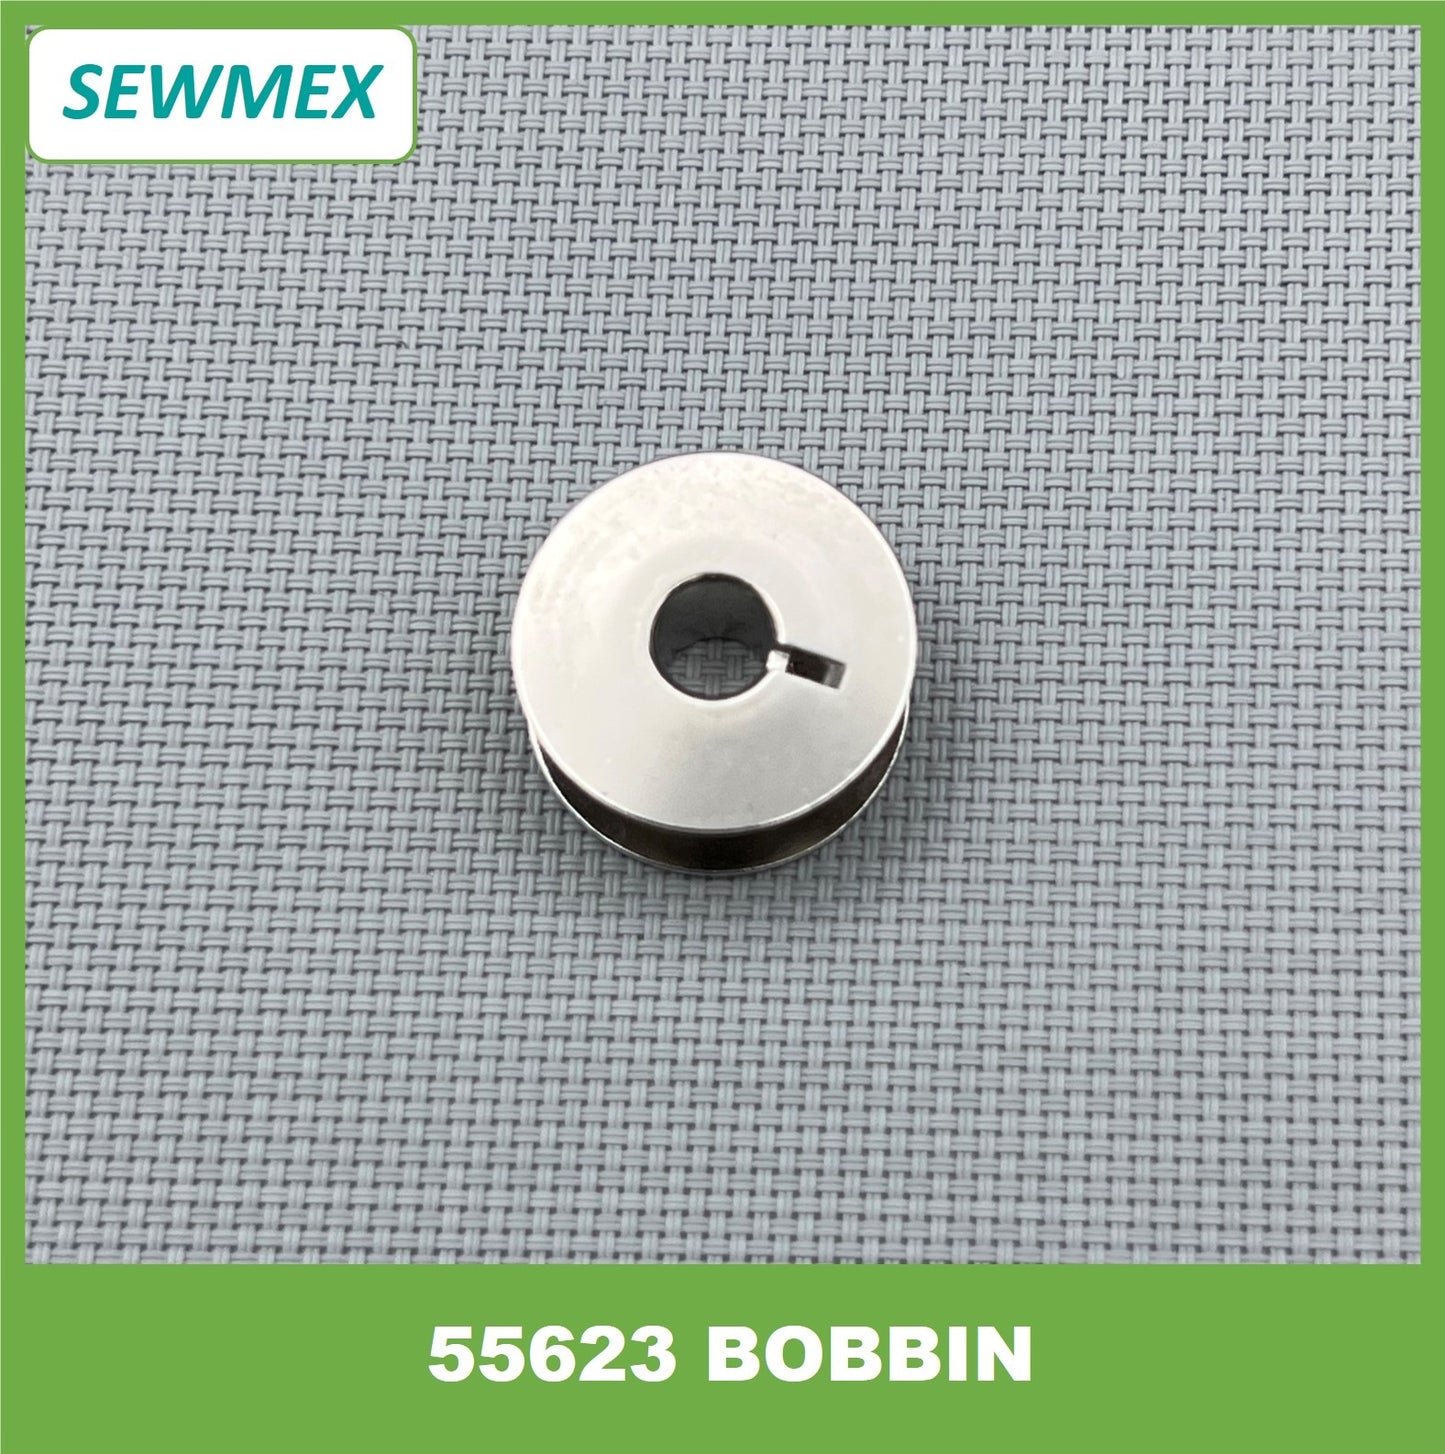 55623 Bobbin Sekuci/ Sekoci Mesin Jahit Sewing Machine